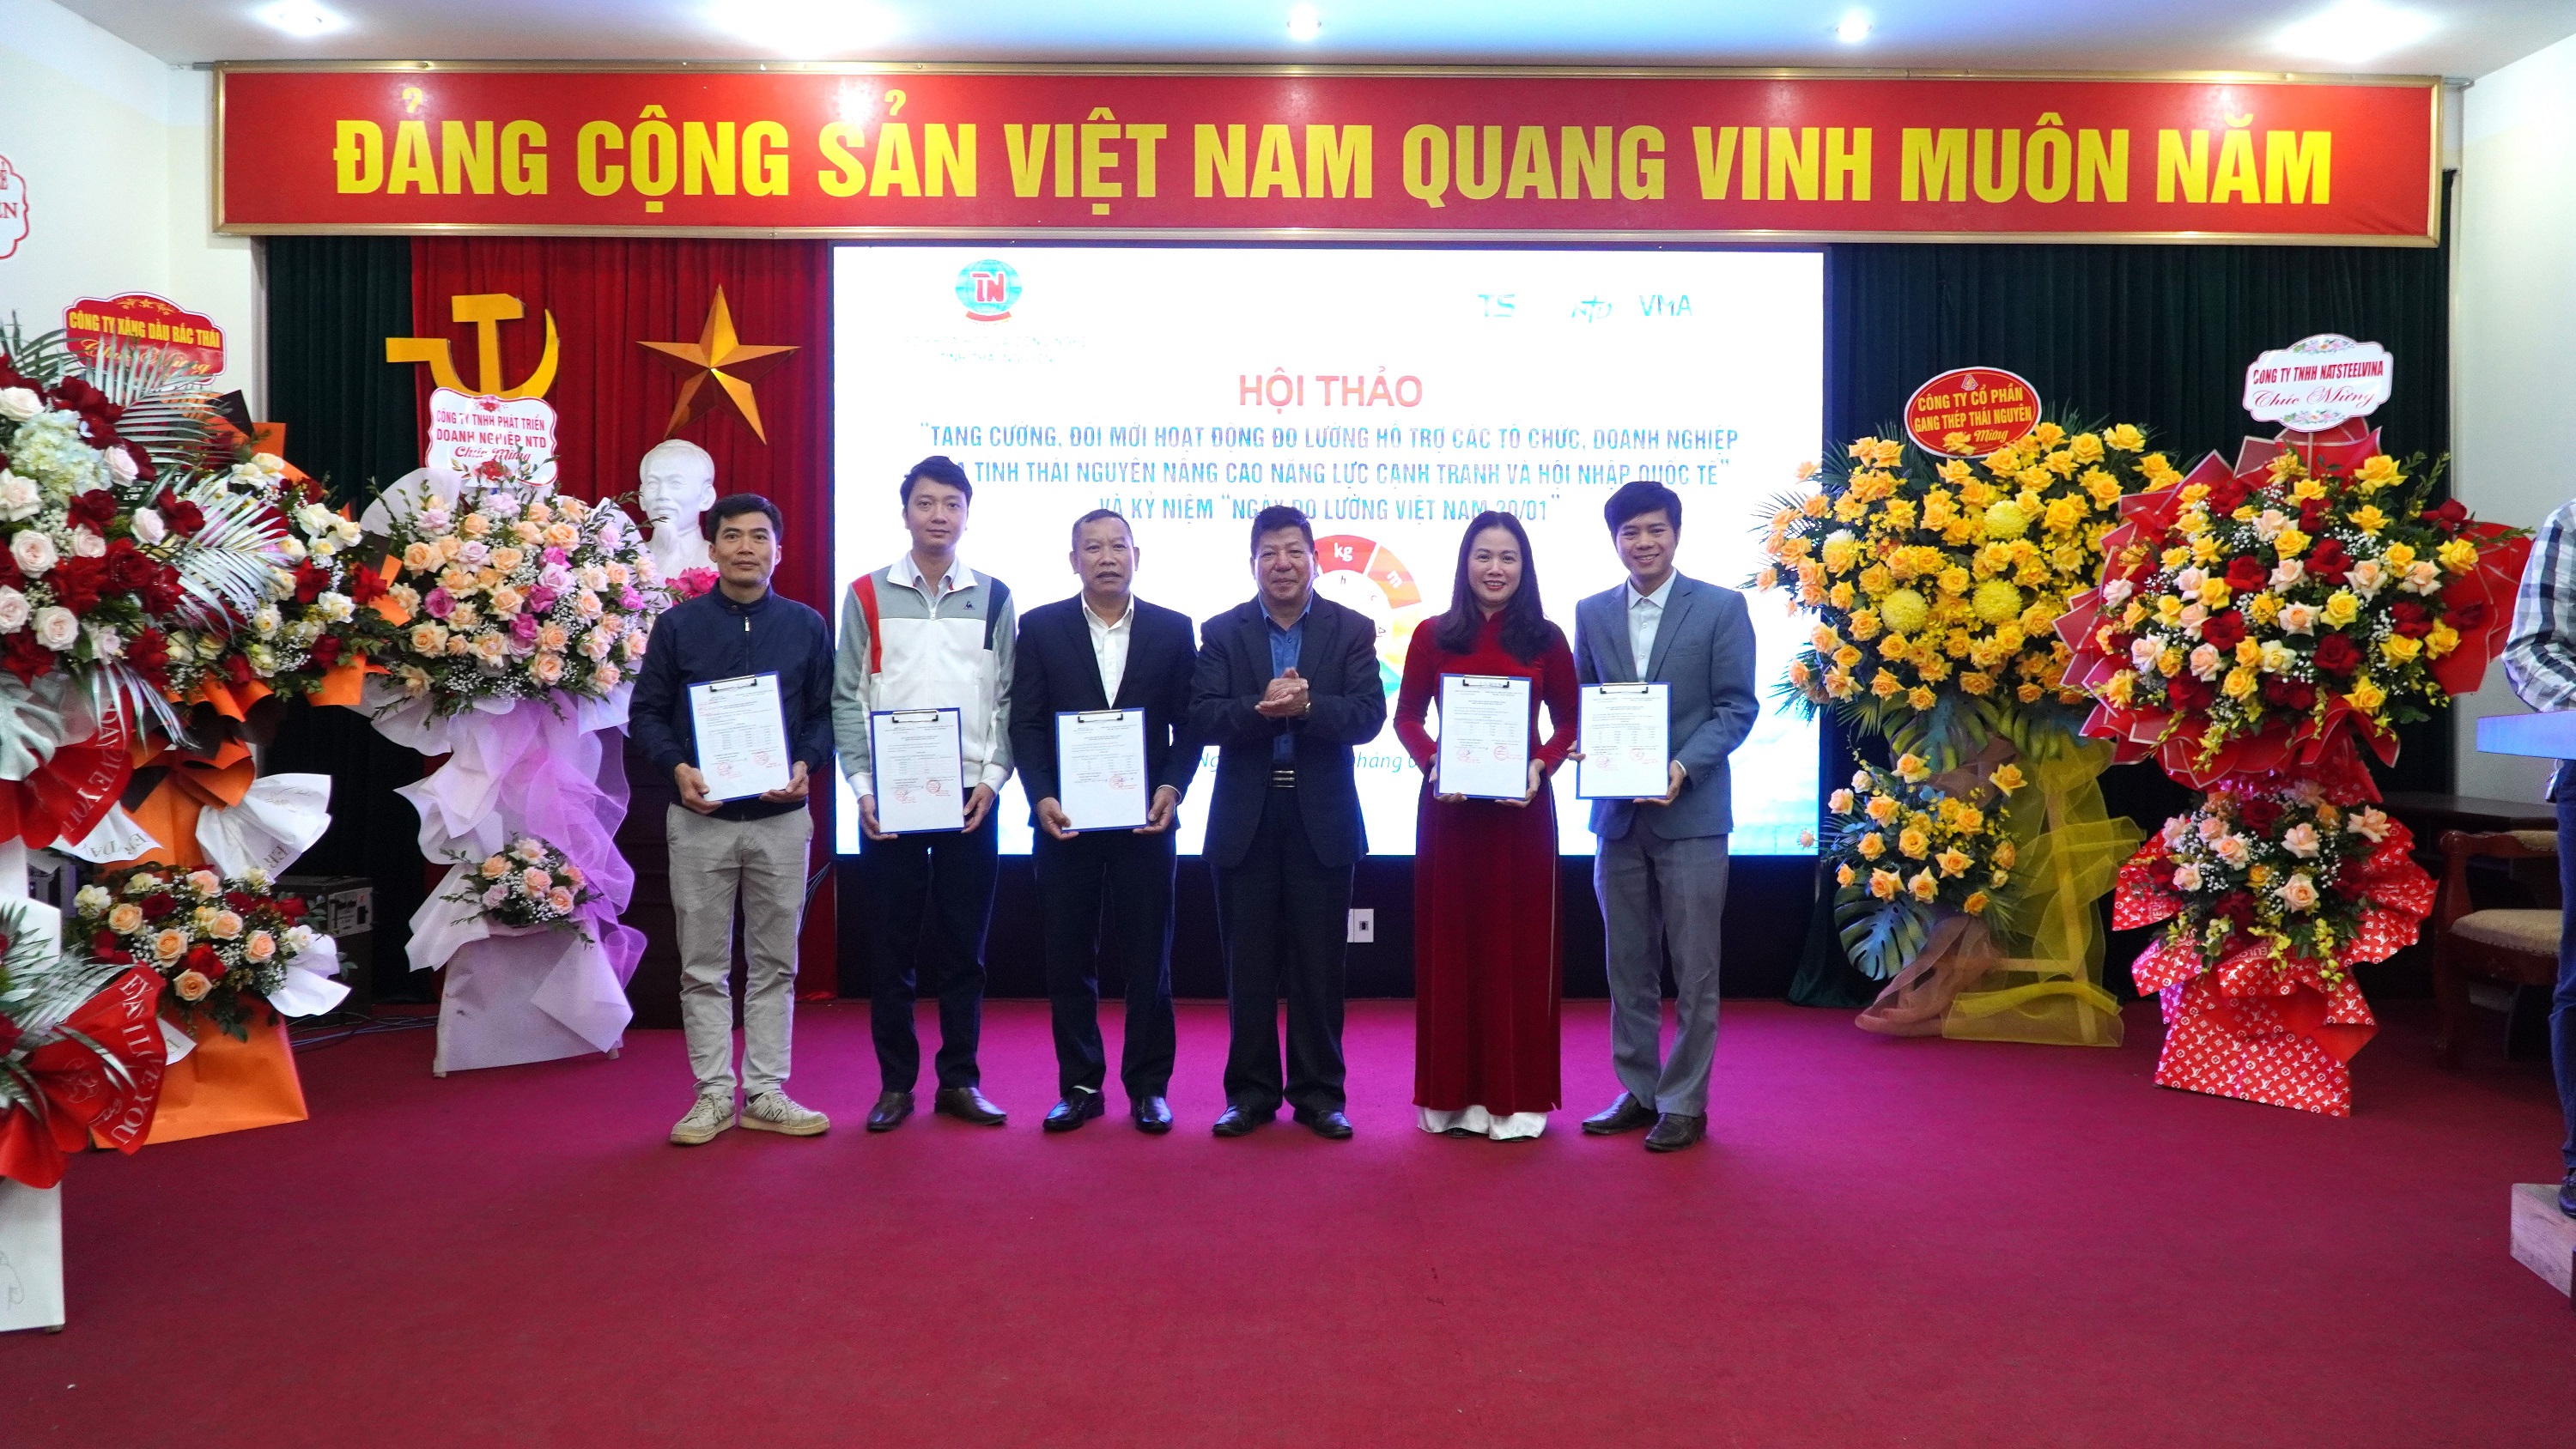 Hội thảo “Tăng cường, đổi mới hoạt động đo lường hỗ trợ các tổ chức, doanh nghiệp của tỉnh Thái Nguyên nâng cao năng lực cạnh tranh và hội nhập quốc tế” và kỷ niệm Ngày Đo lường Việt Nam 20/01 -0